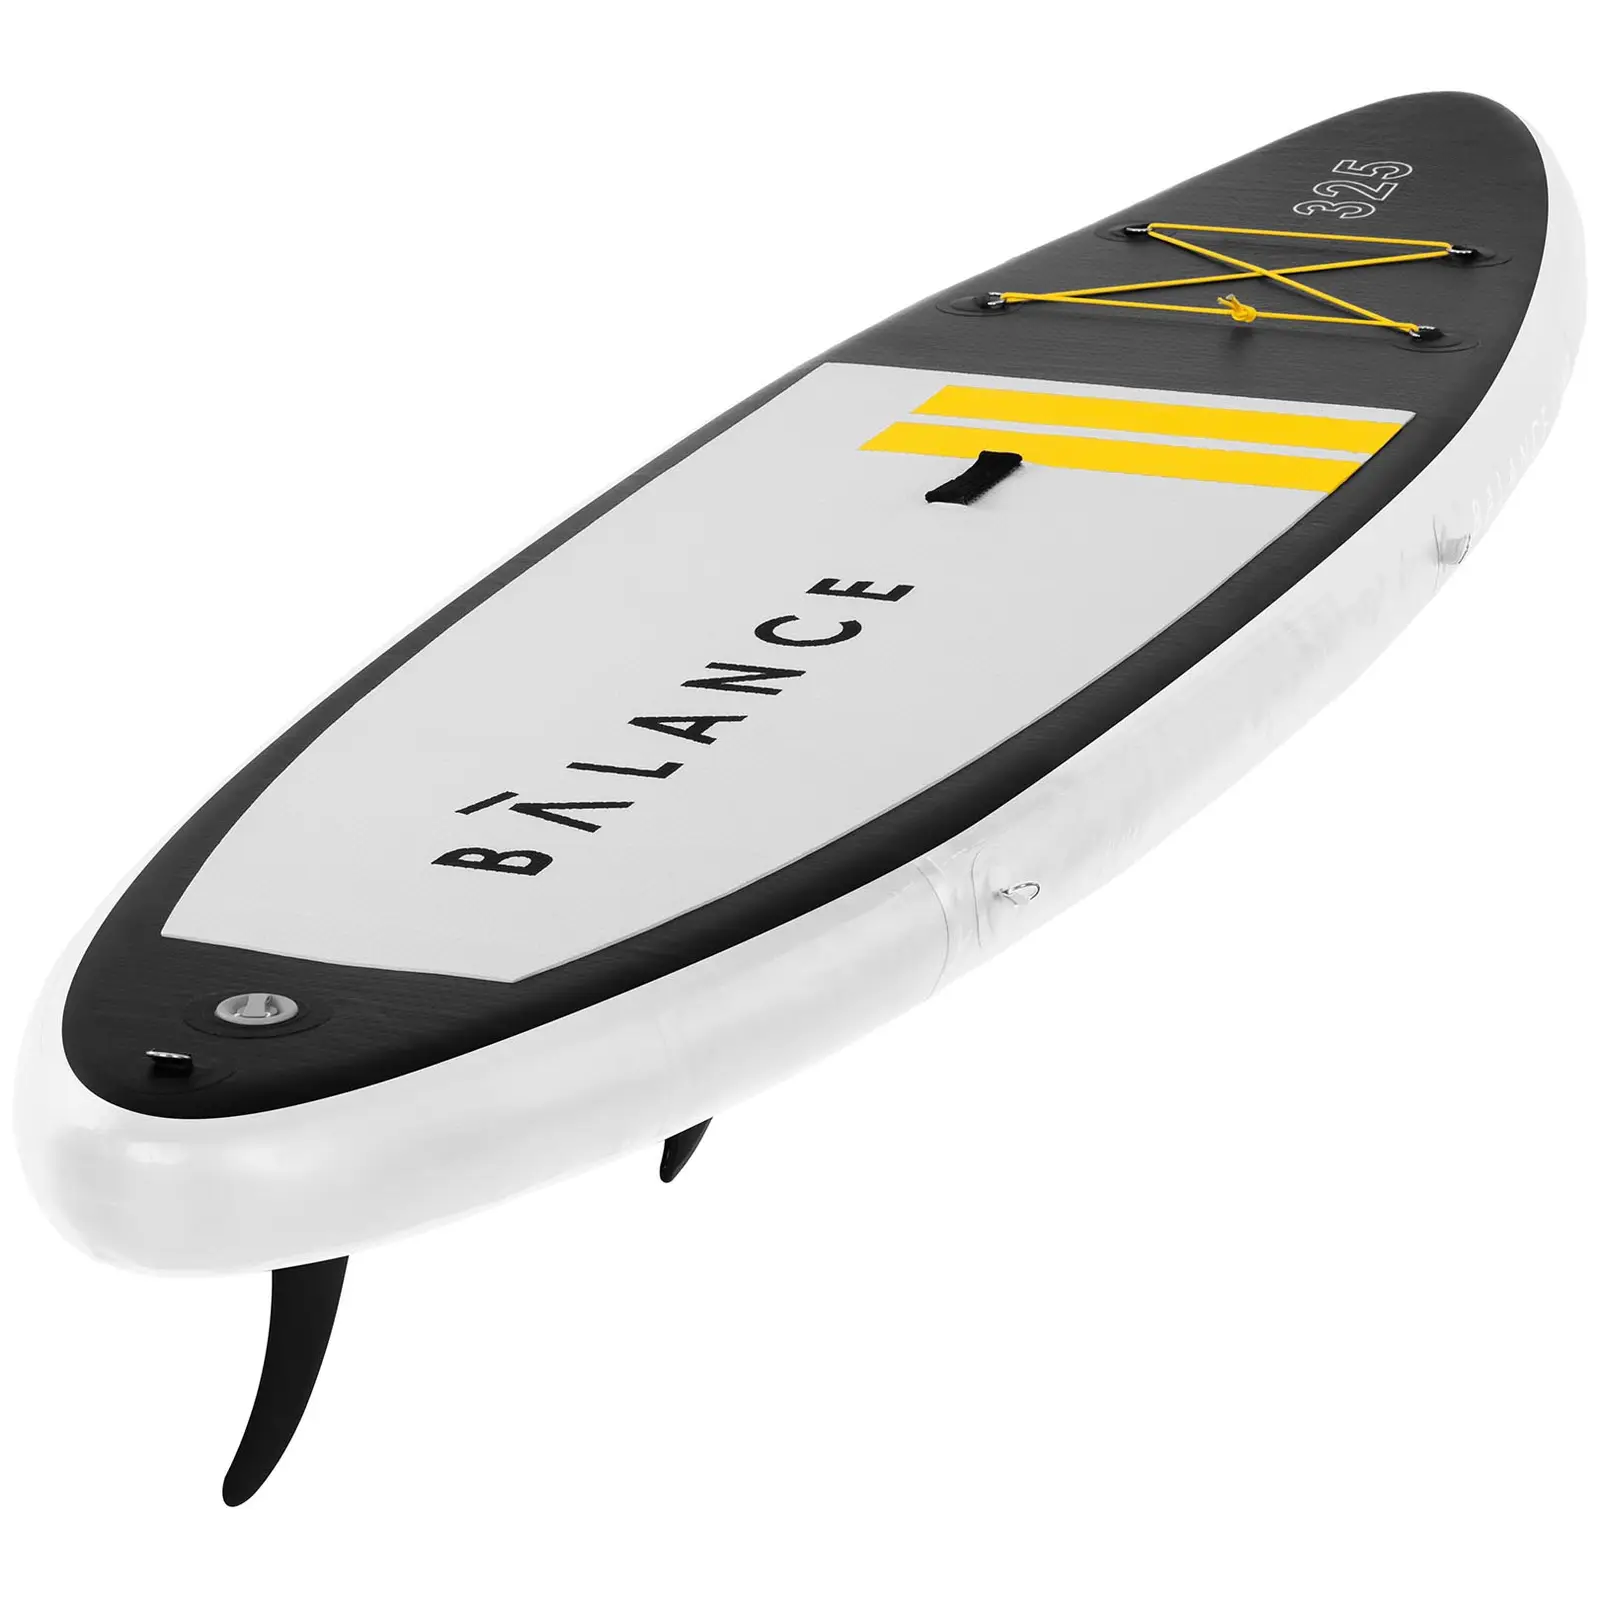 Stand up paddle gonflable - 145 kg - Noir/jaune - Kit incluant pagaie et accessoires